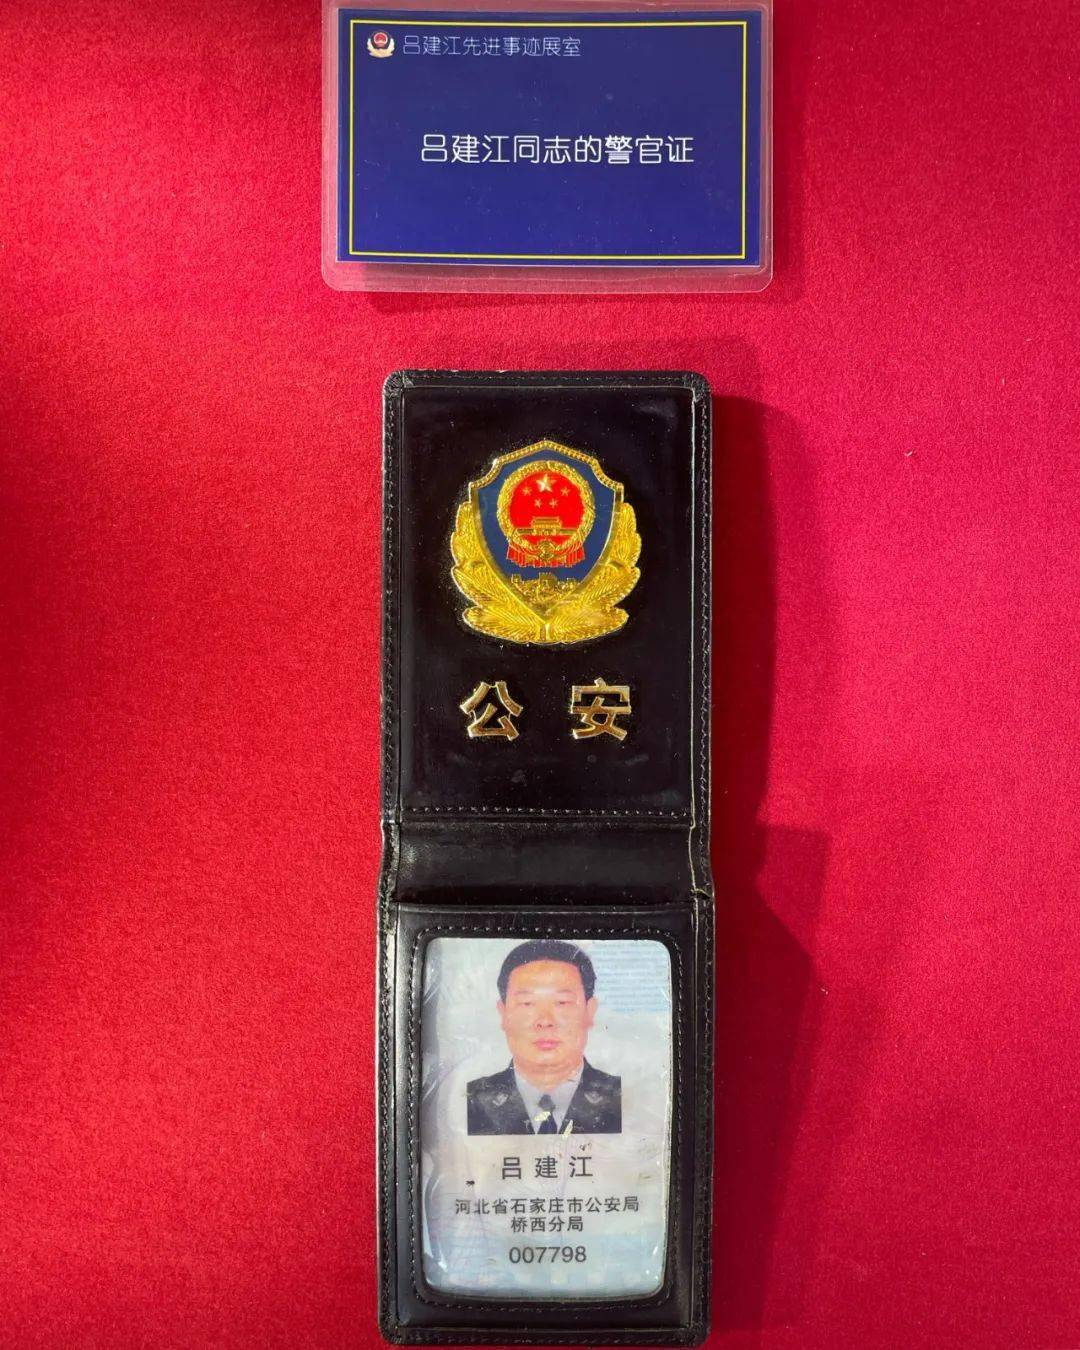 吕建江同志的警官证